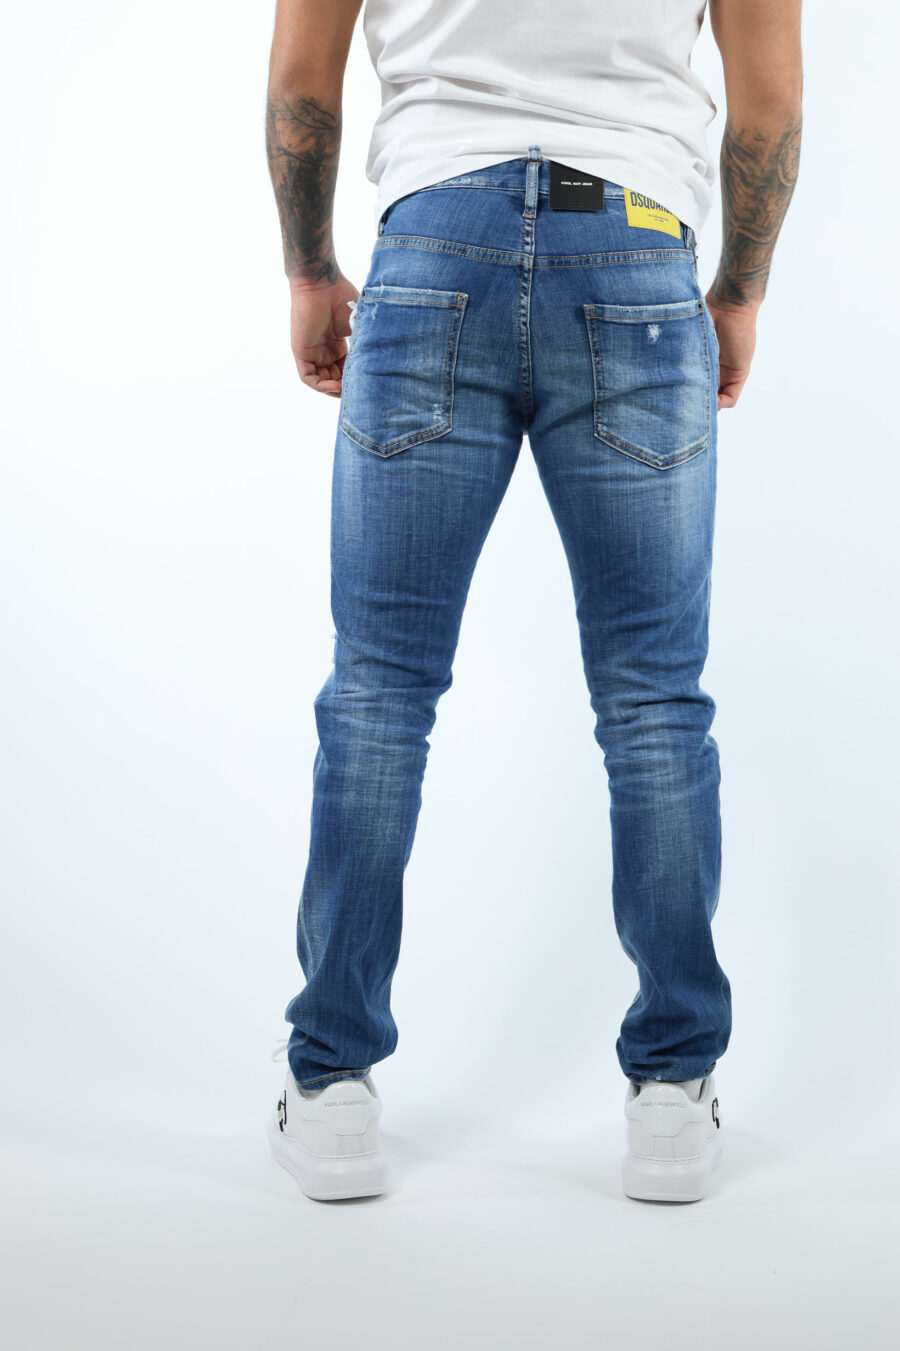 Hellblaue "cool guy jean"-Hose mit Halbschlitzen und halb abgenutzt - 8054148313456 2